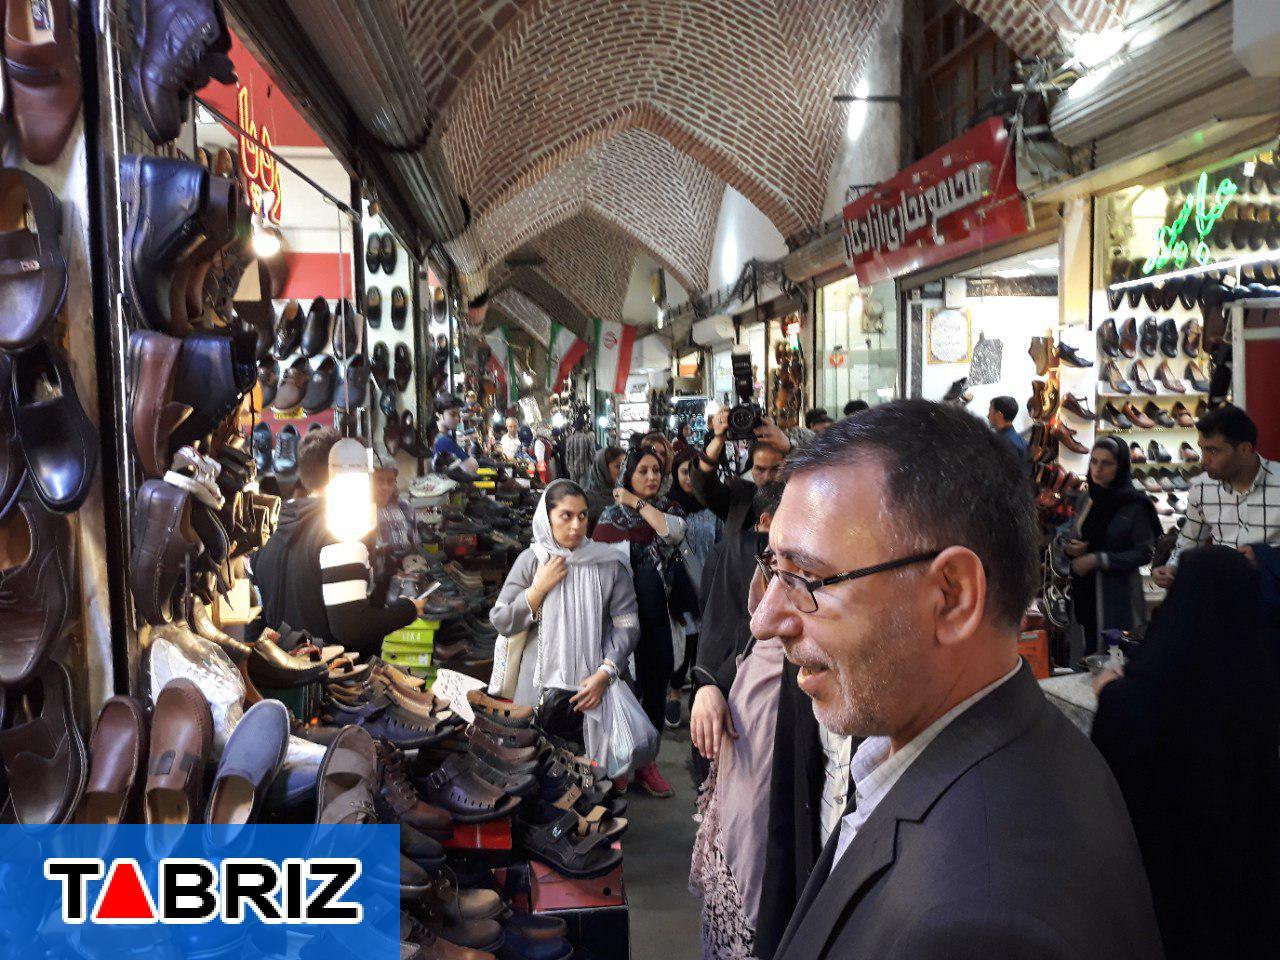 افزایش ۱۲ درصدی اقامت کنندگان/برای حمایت از کالای ایرانی در نمایشگاه ها، صنایع دستی استان عرضه می شود